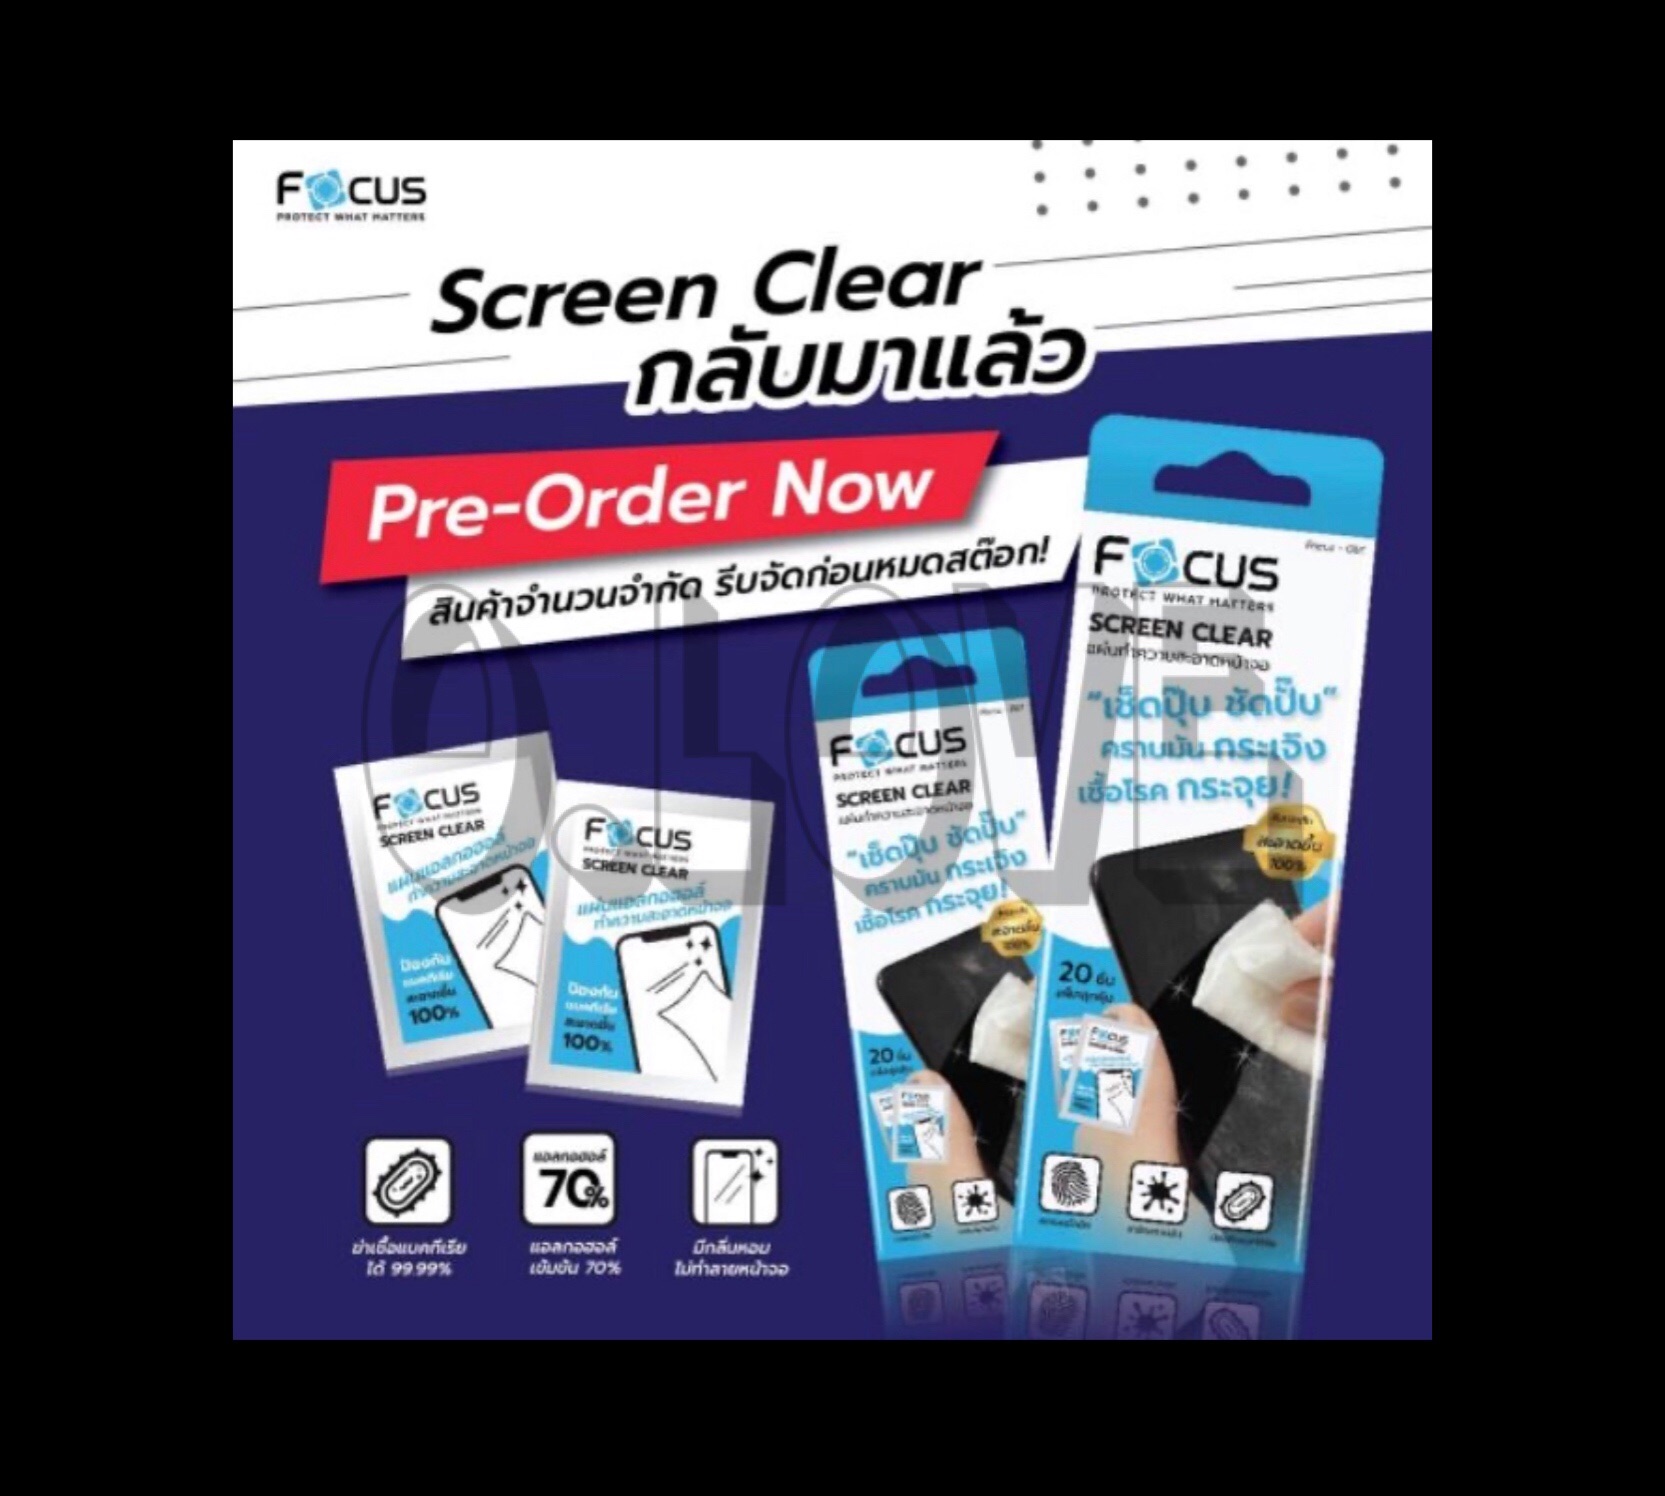 พร้อมส่งค่ะ ? สินค้าแบ่งขาย 4ซอง Focus Screen Clear แผ่นแอลกอฮอล์ ทำความสะอาดหน้าจอ โทรศัพท์ มือถือ โฟกัส แบรนด์ยอดนิยม clear wipe มี Alcohol 70%  ช่ป้องกันเชื้อโรคได้ ทำความสะอาดหน้าจอสมาร์ทโฟนและแท็บเลท คราบมันกระเจิง ไม่ทำร้ายหน้าจอโทรศัพท์